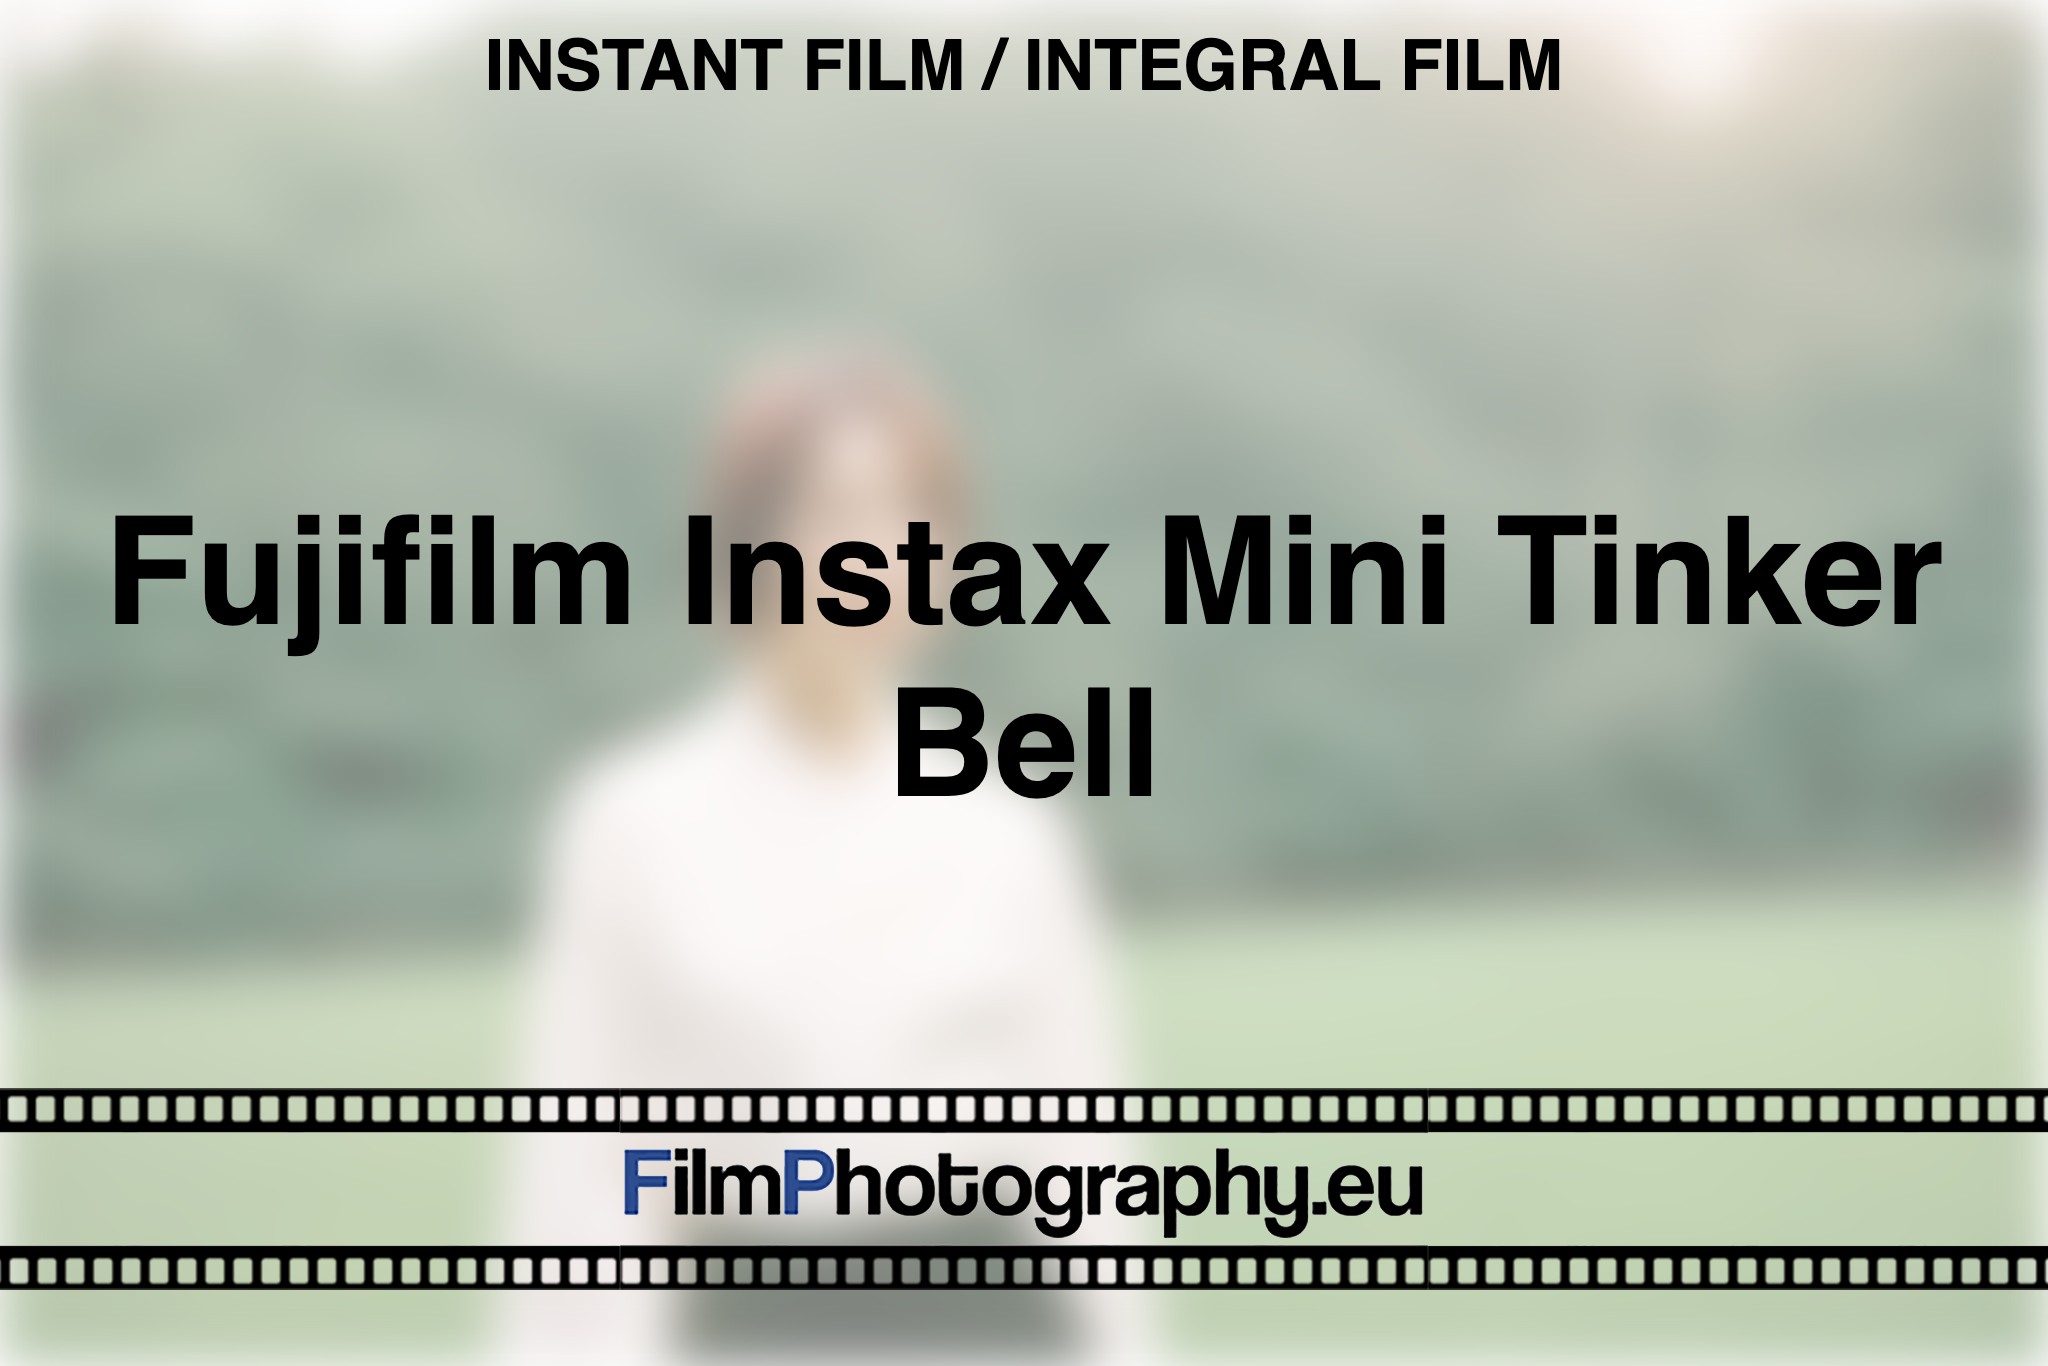 fujifilm-instax-mini-tinker-bell-instant-film-integral-film-bnv